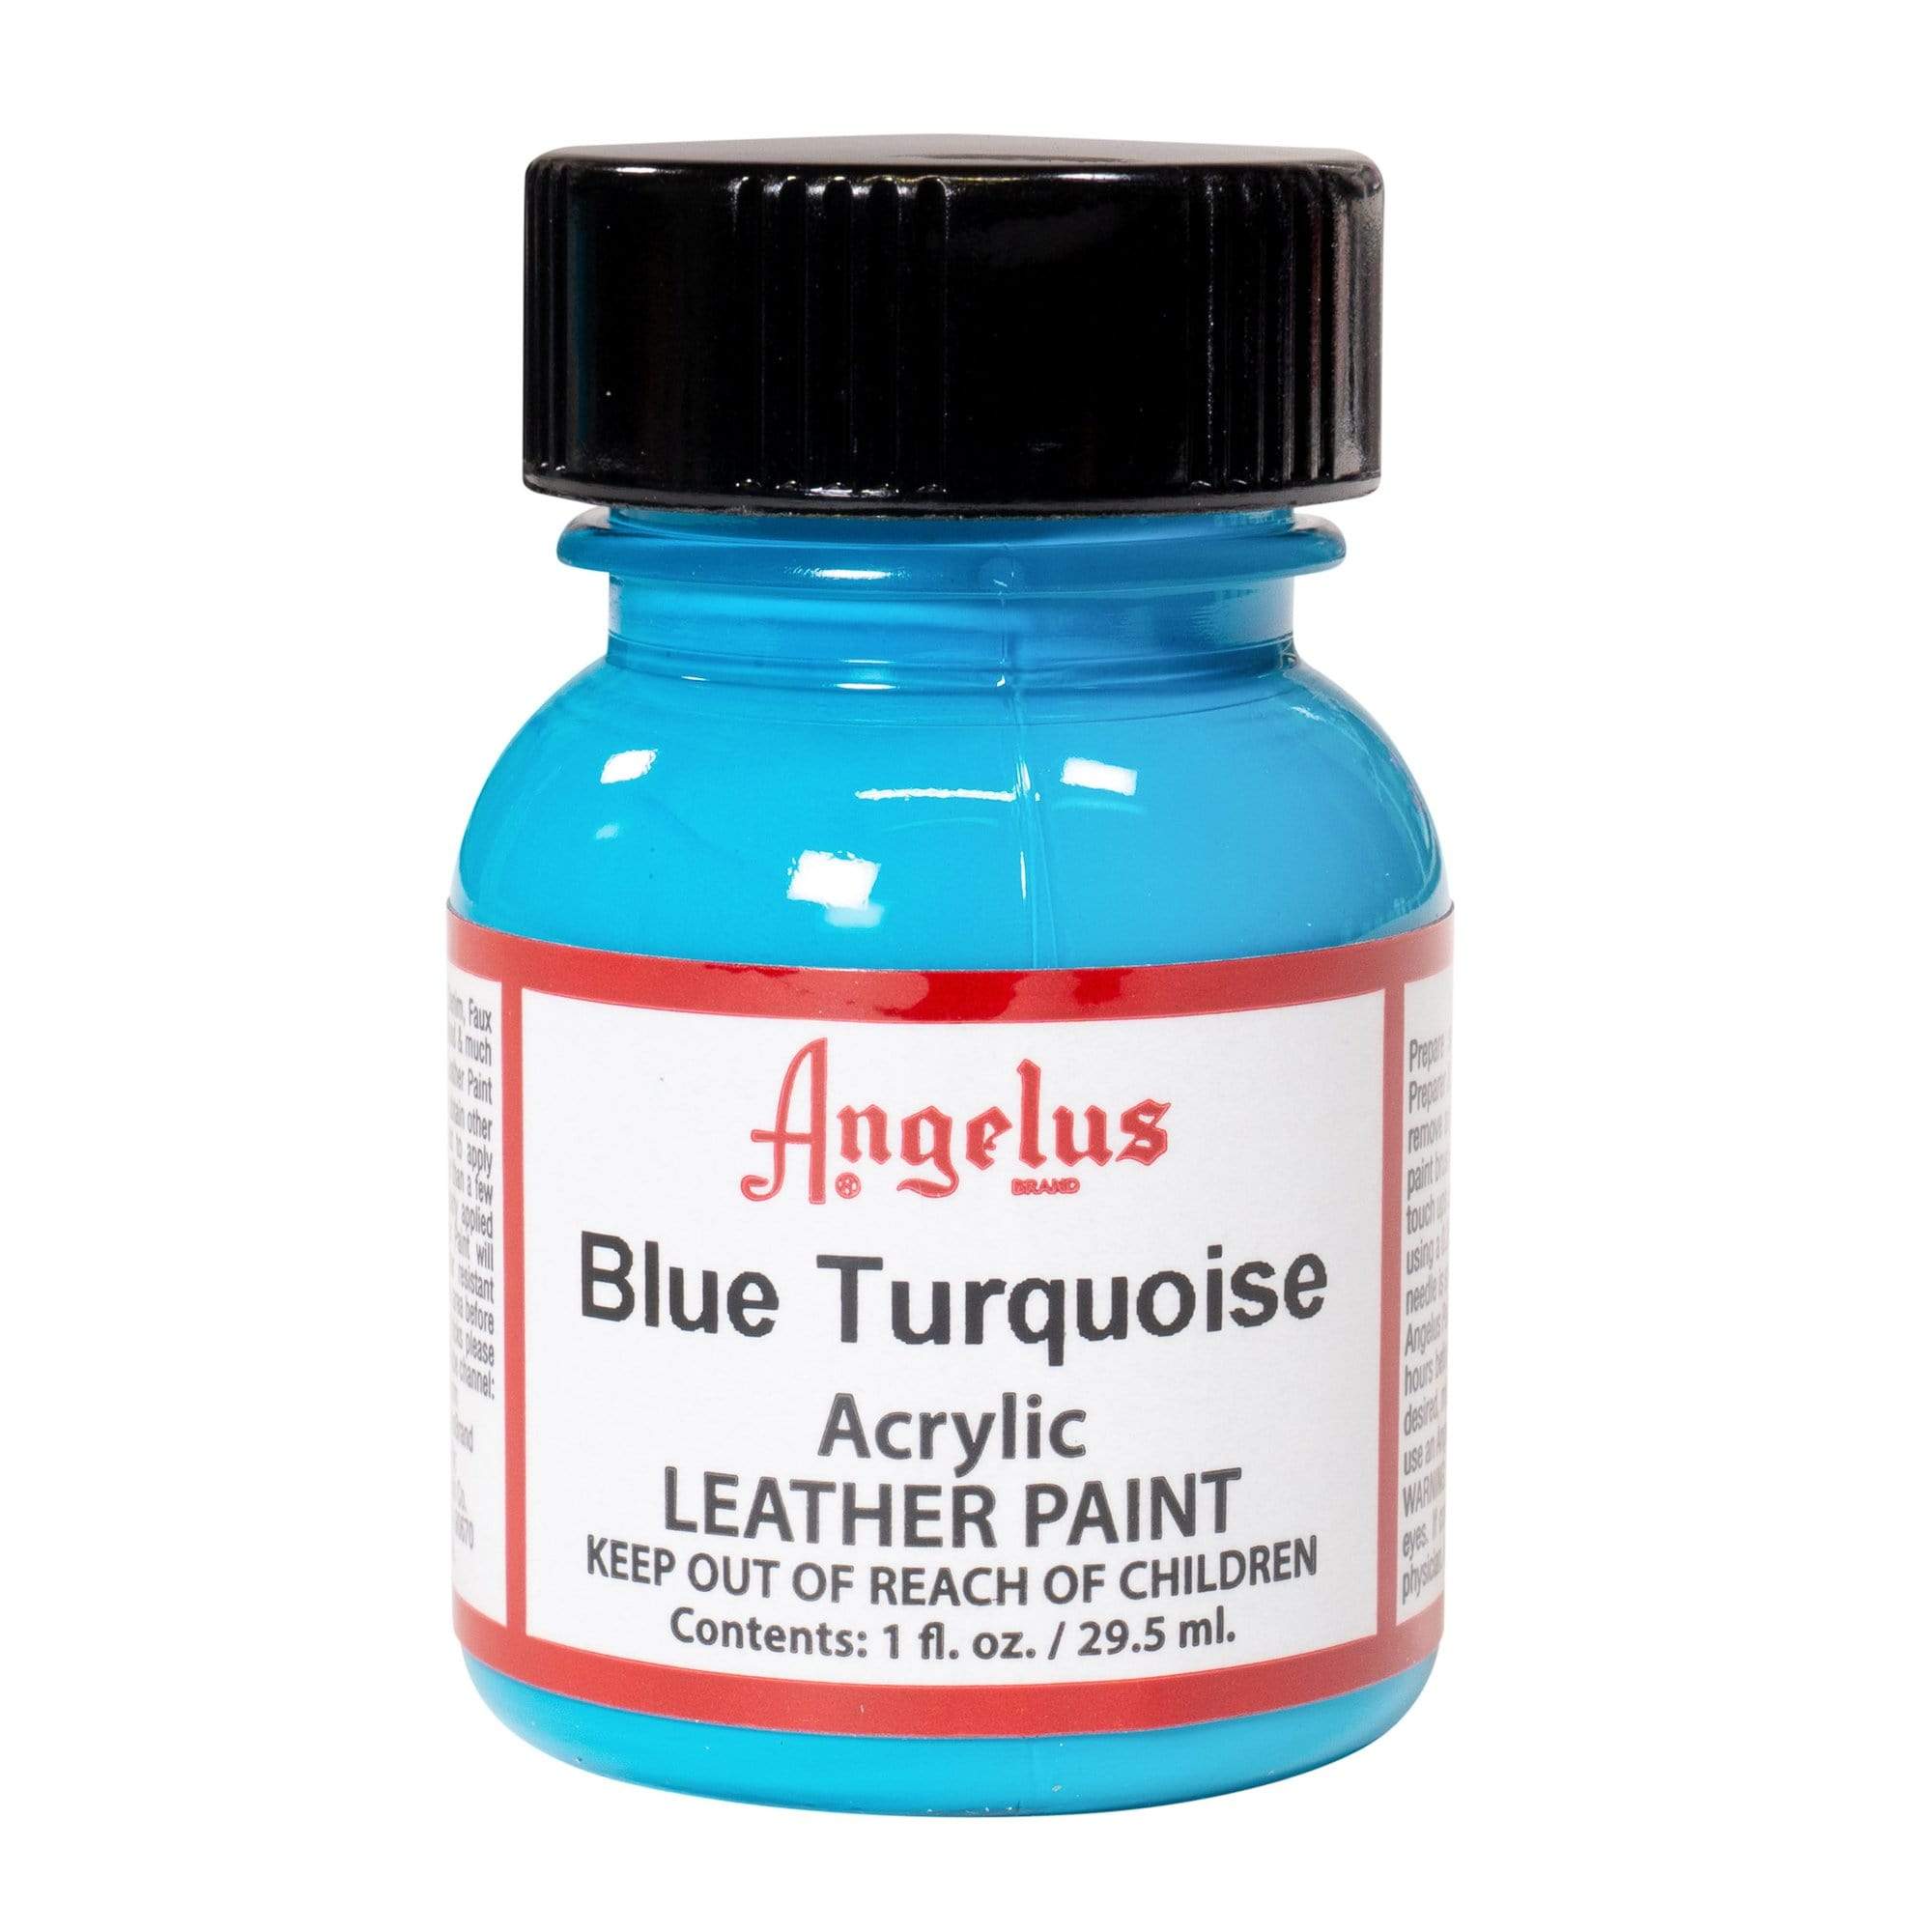 Angelus Acrylic Leather Paint - Blue Turquoise, 1 oz